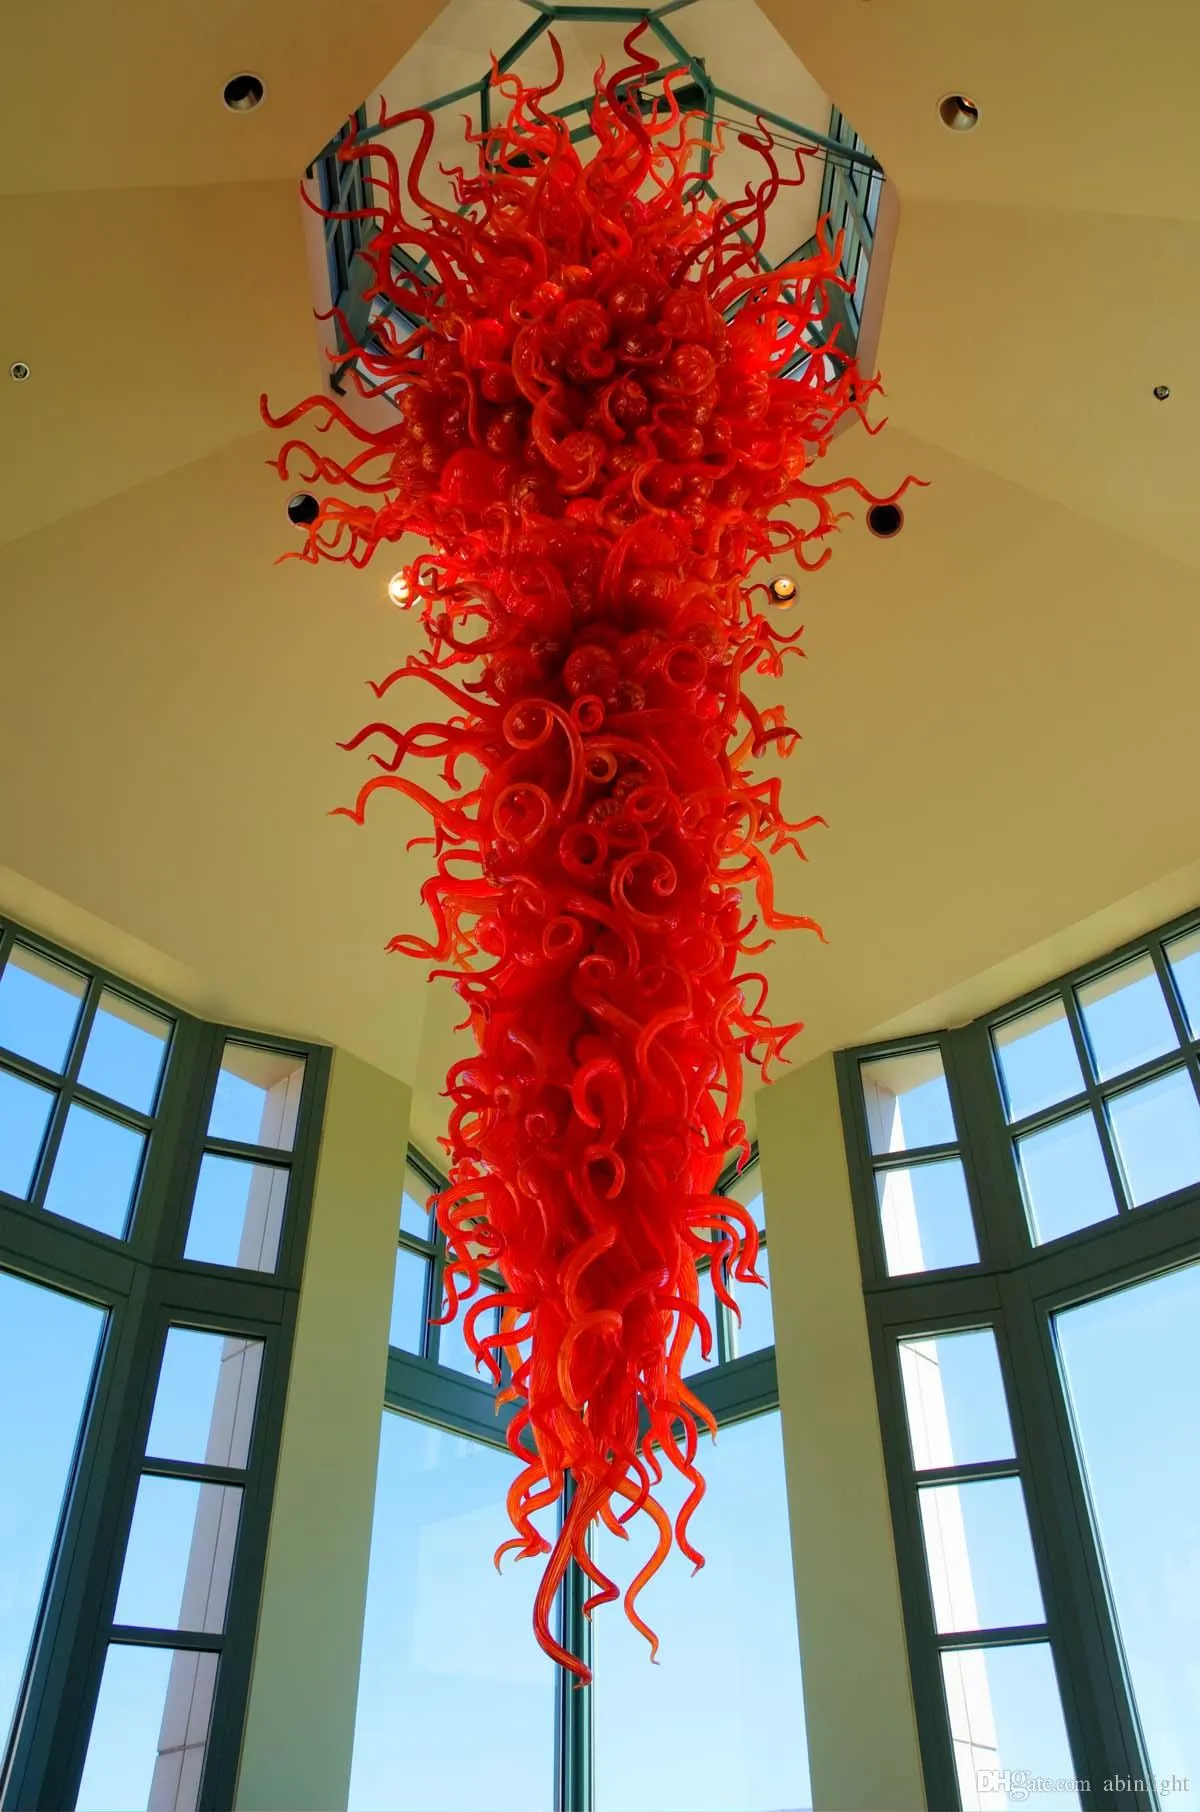 الثريات الزجاجية الحمراء الكبيرة فوريت هوم مول في الفندق الديكور الزجاج الفني مصابيح الثريا قلادة مصابيح رفاهية الرفاهية